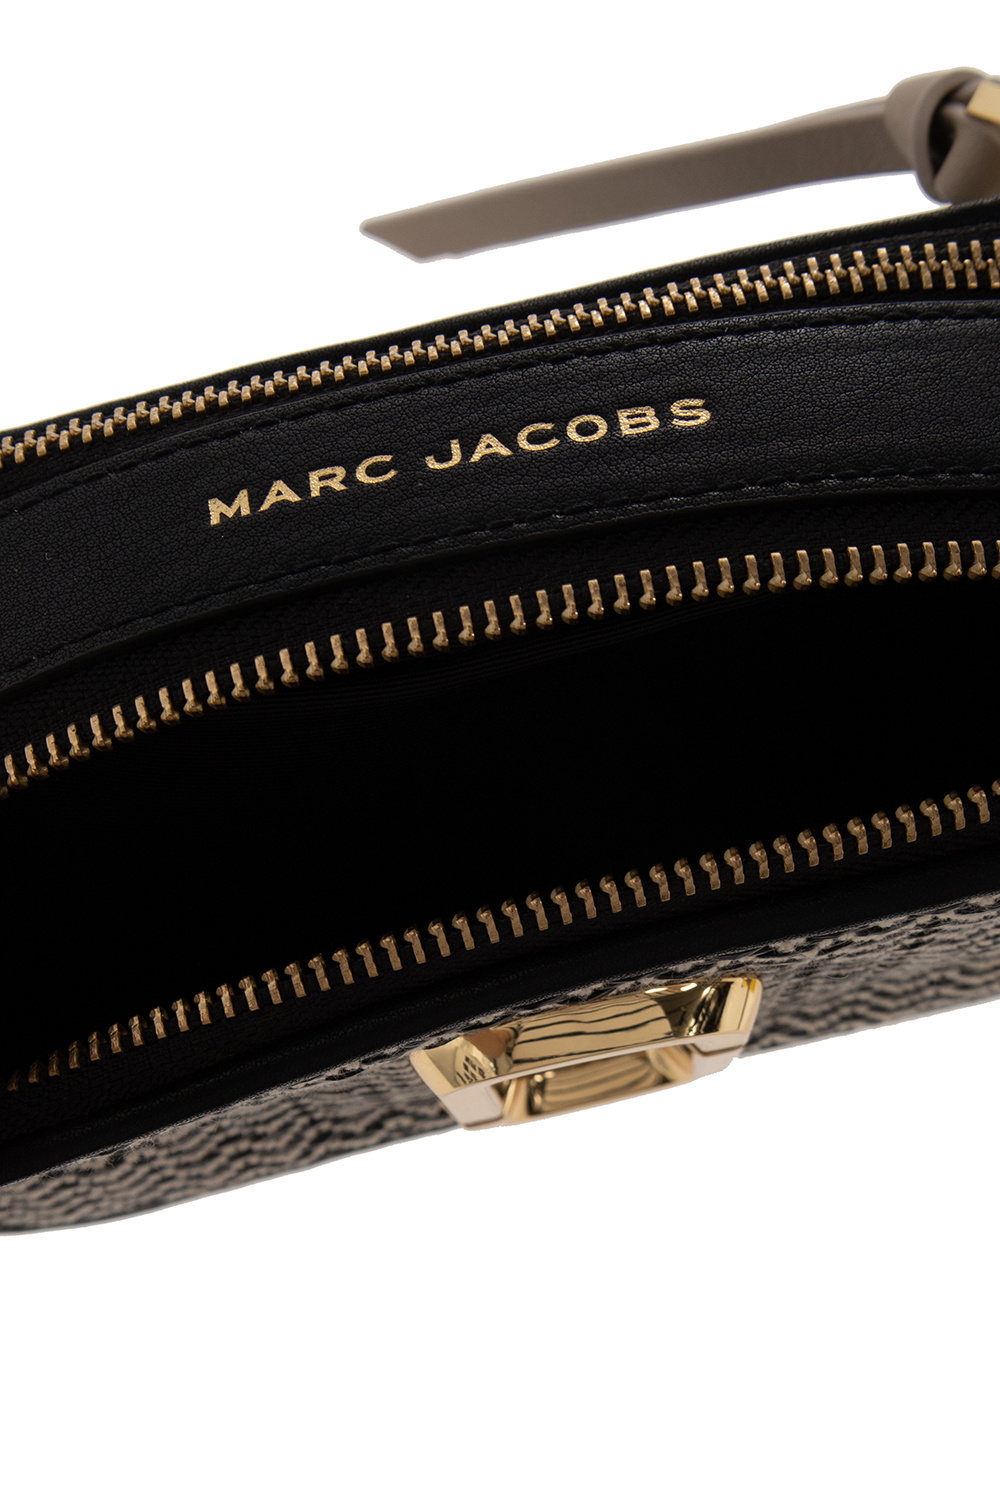 Marc Jacobs ‘The Mixed Media’ Eyewear bag